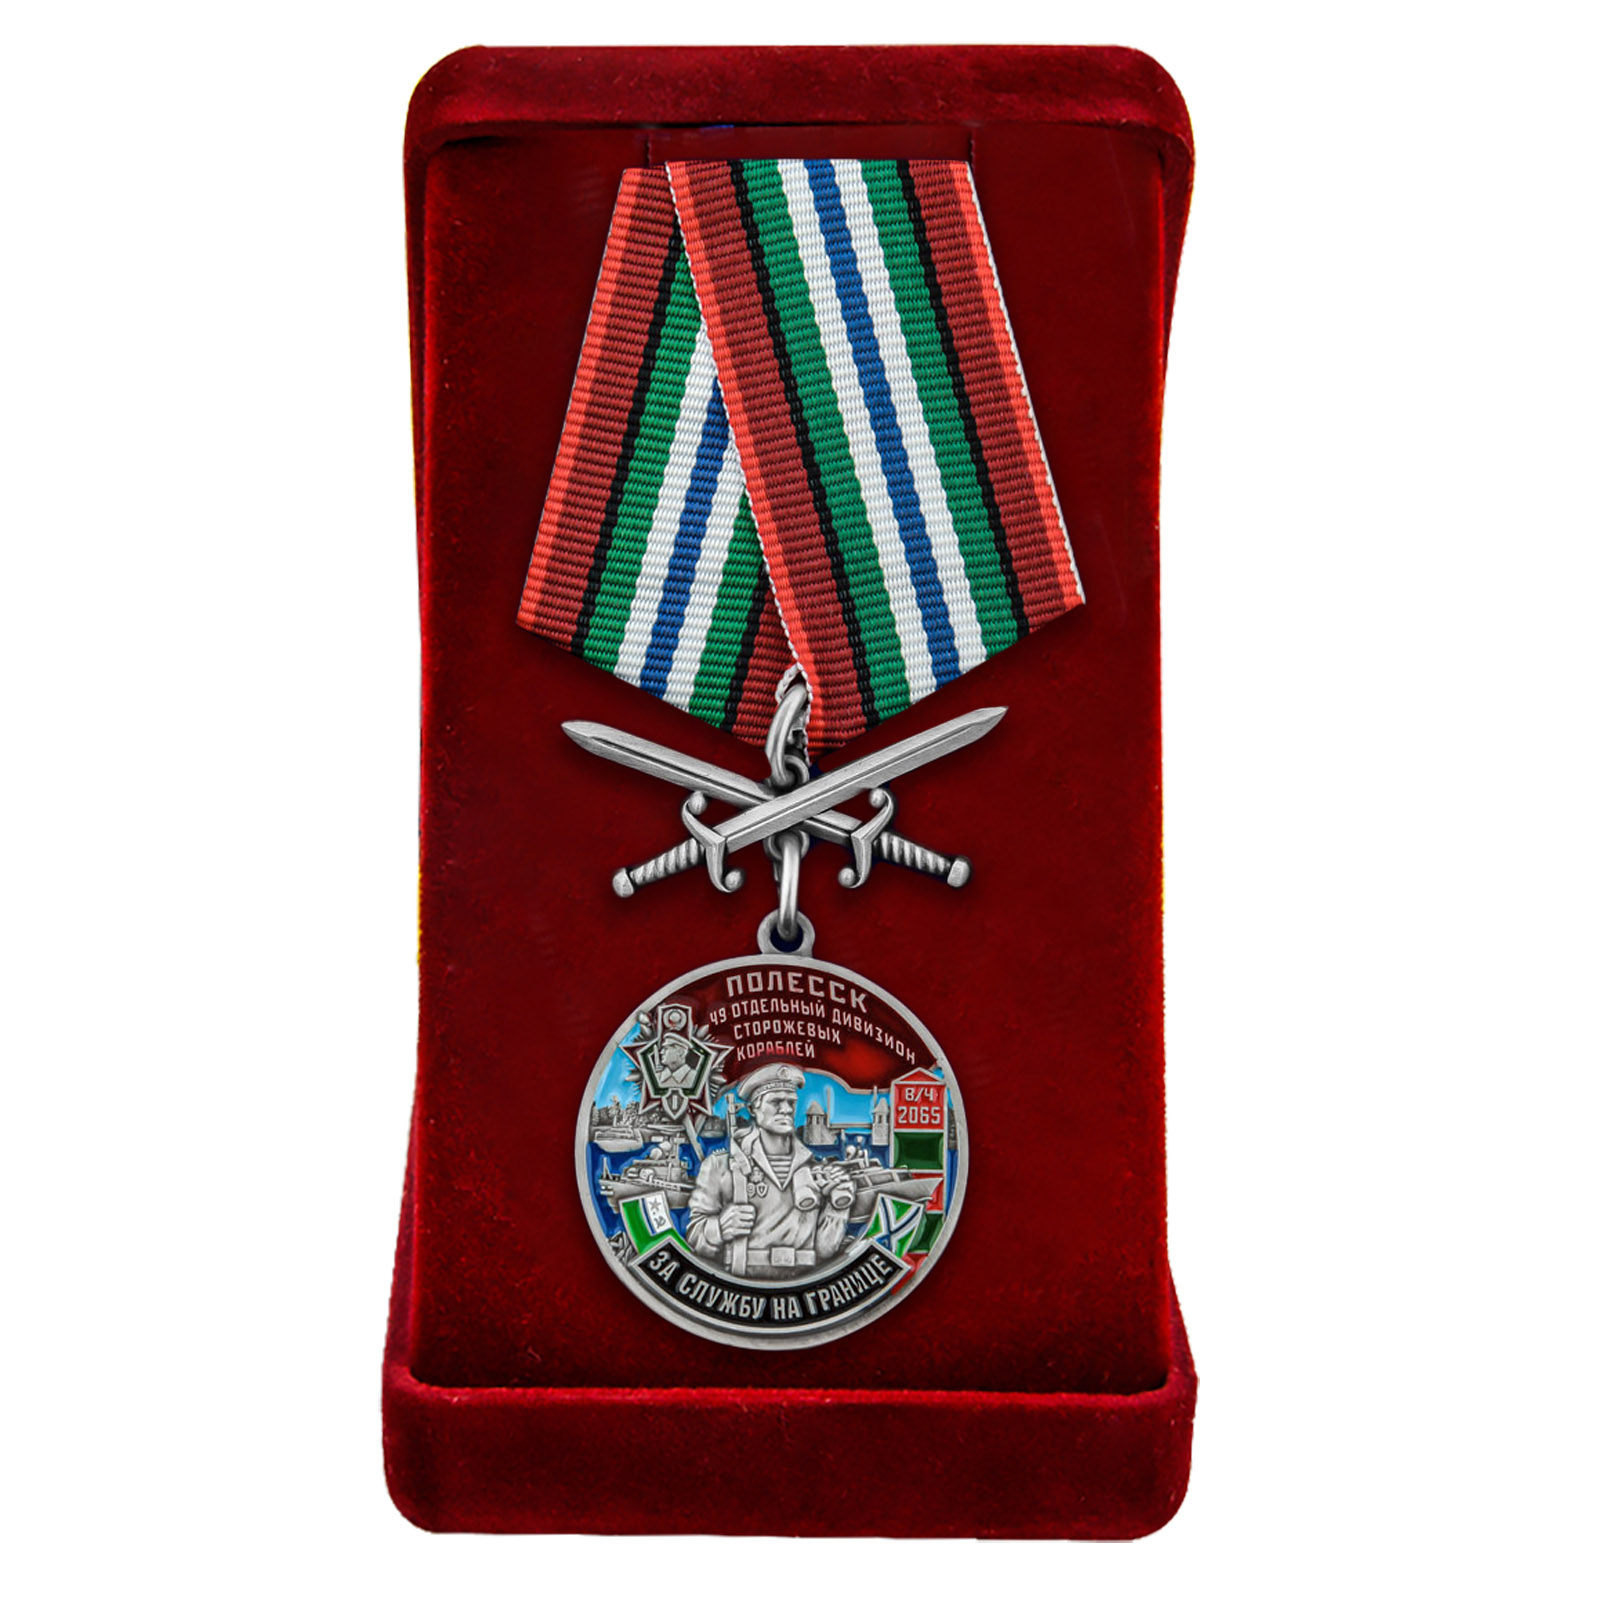 Купить медаль "За службу в 49-ом ОДнПСКР Полесск" в бархатистом футляре